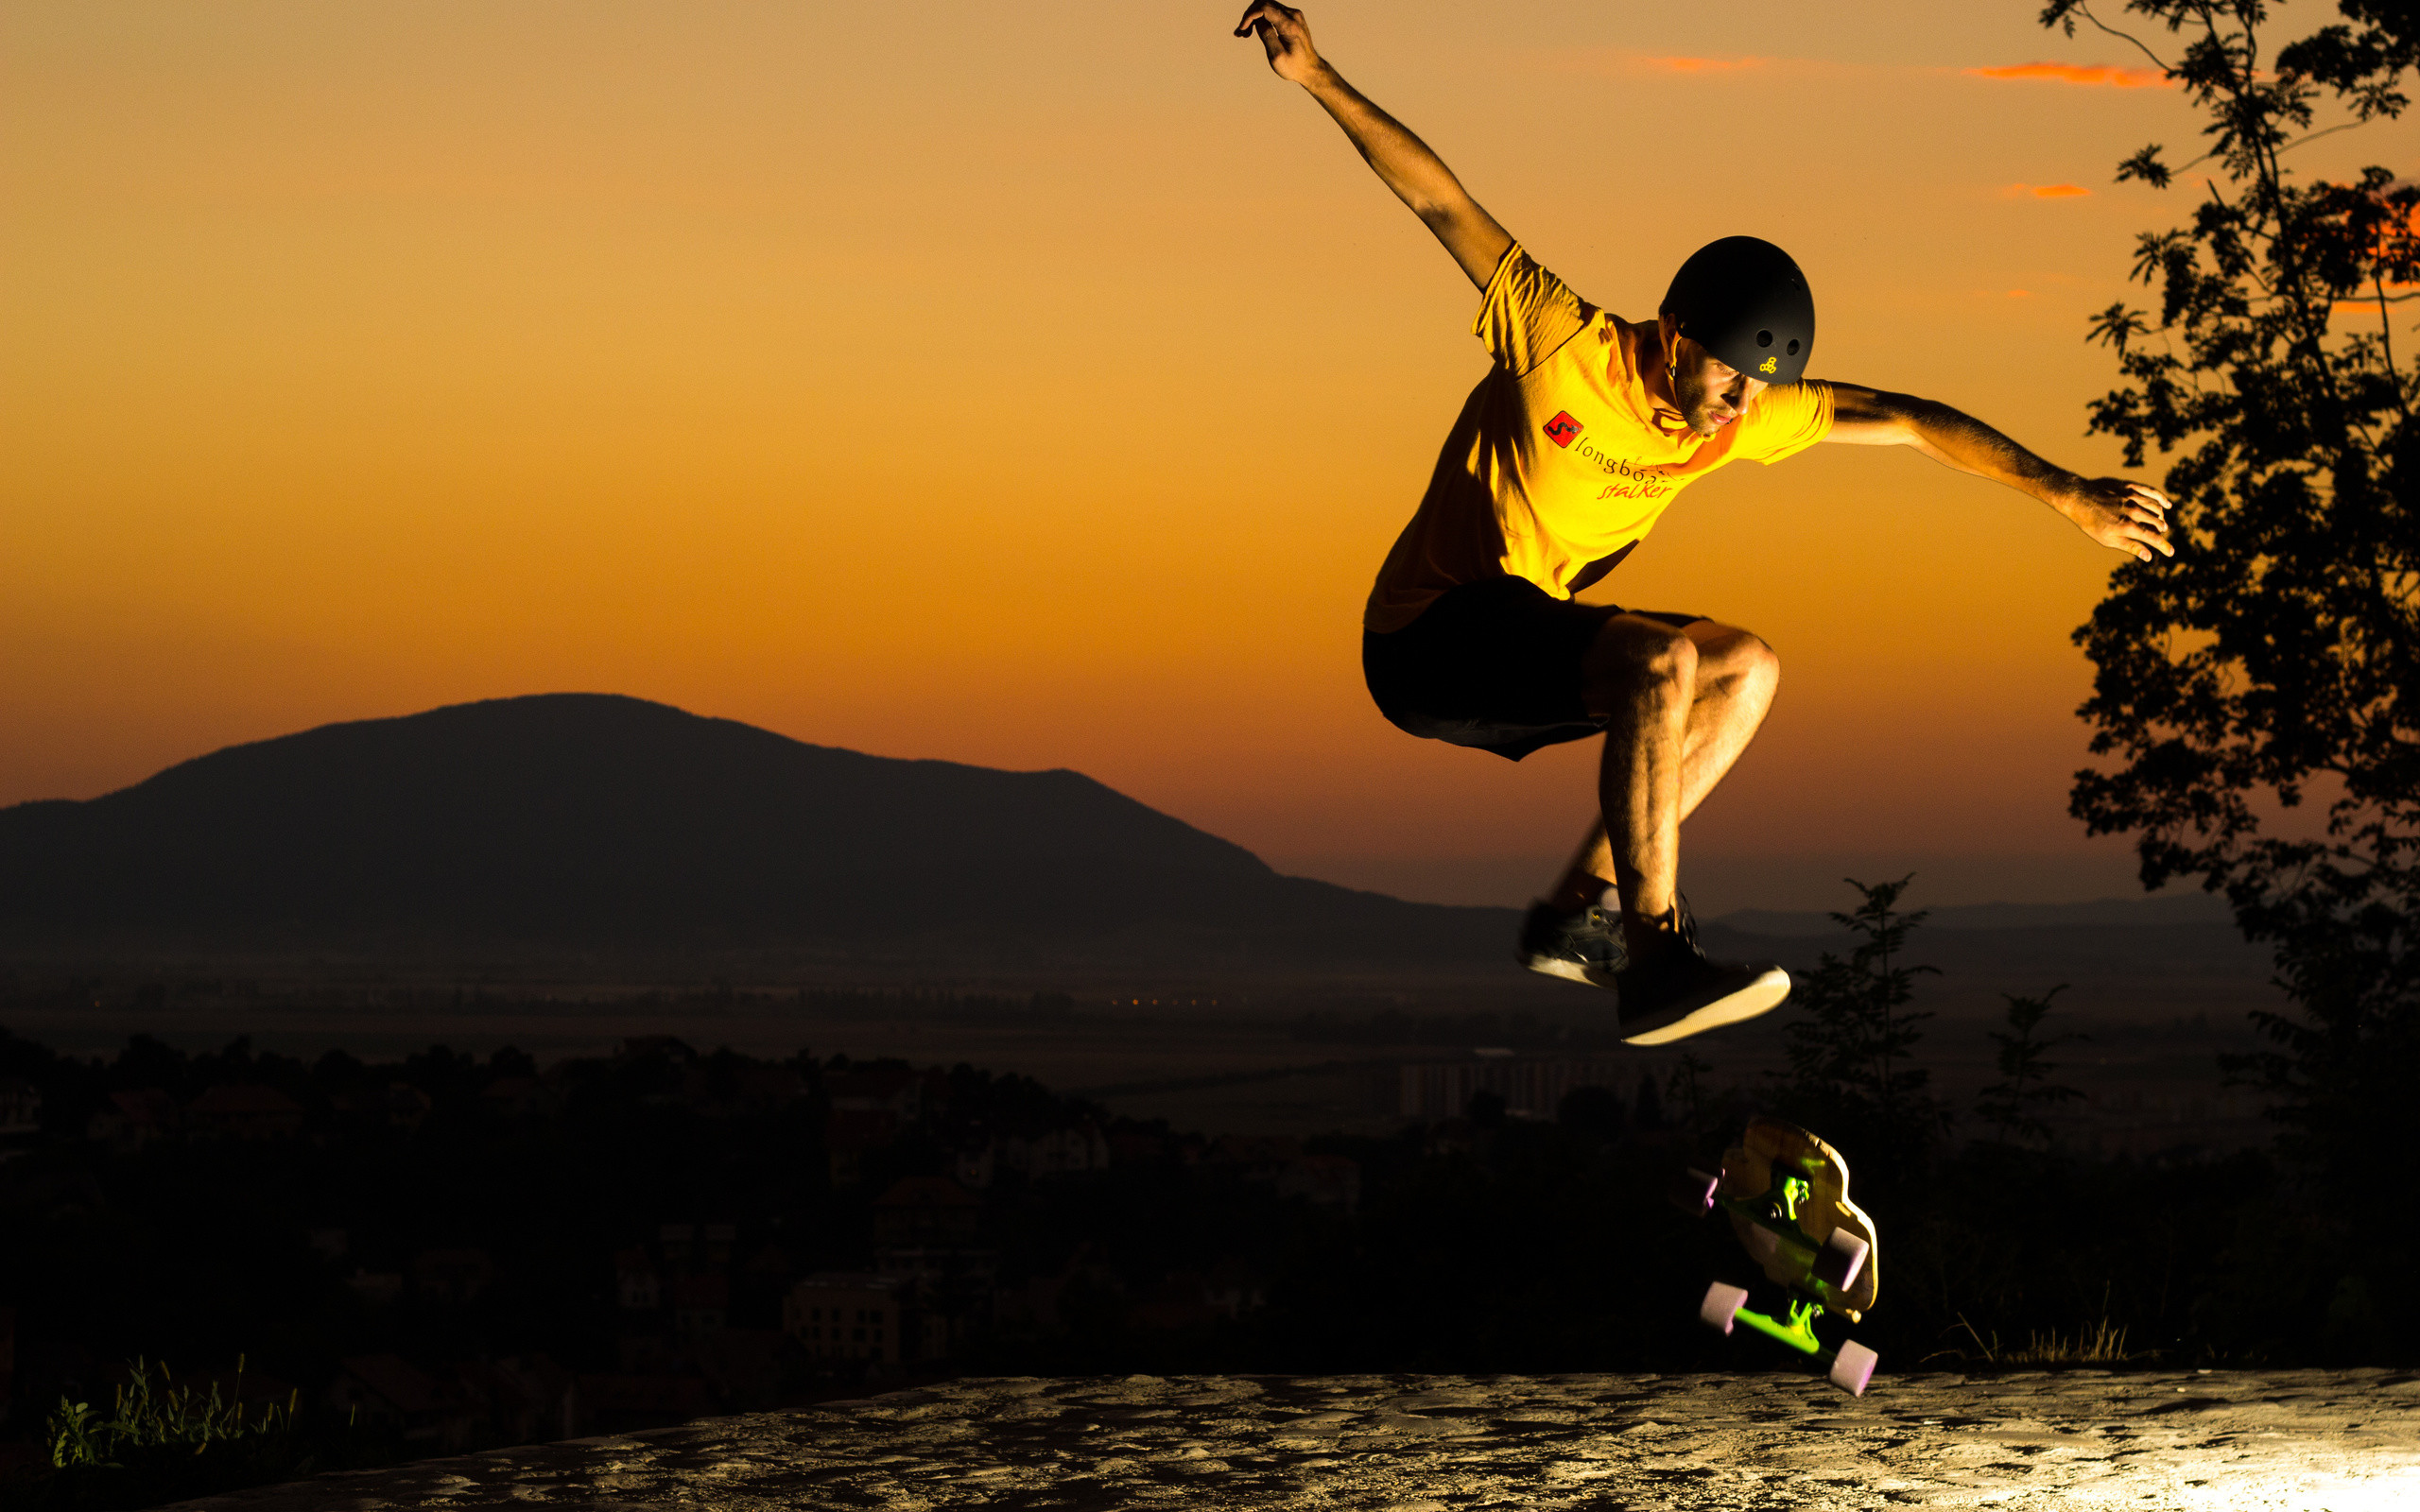 fonds d'écran cool de skateboard,des sports,sport extrême,tromper,heureux,sauter